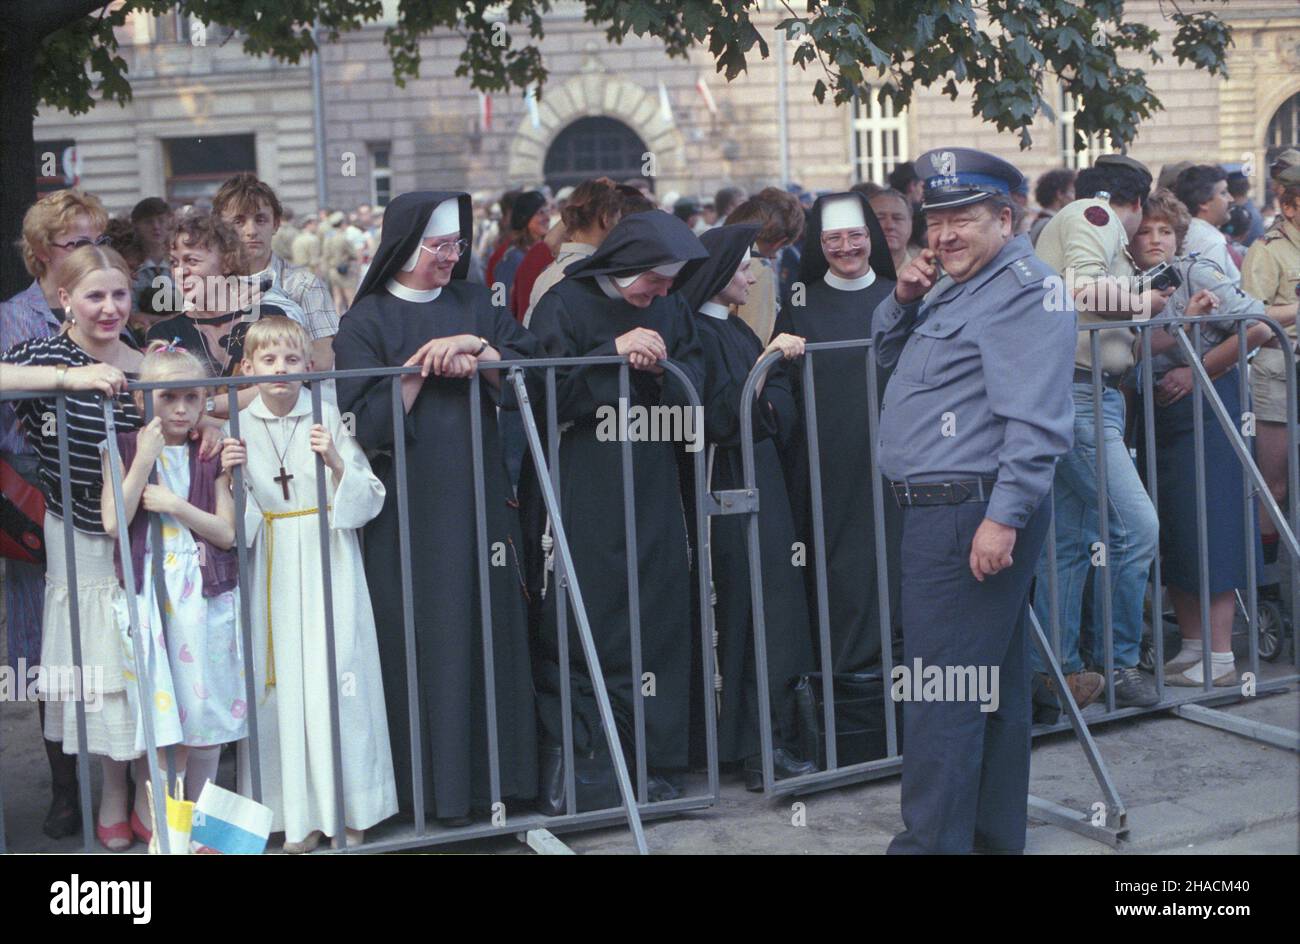 Kraków 10.06.1987. III pielgrzymka papie¿a Jana Paw³a II do Polski. Na trasie przejazdu papie¿a do królewskiej katedry na Wawelu zebra³y siê t³umy wiernych. uu  PAP/Jerzy Ochoñski       Cracow 10 June 1987. Pope John Paul II on his third pilgrimage to Poland. The pope meets Cracow residents. Pictured: crowds waiting along the pope's motorcade route to the Wawel Royal Cathedral.  uu  PAP/Jerzy Ochonski Stock Photo